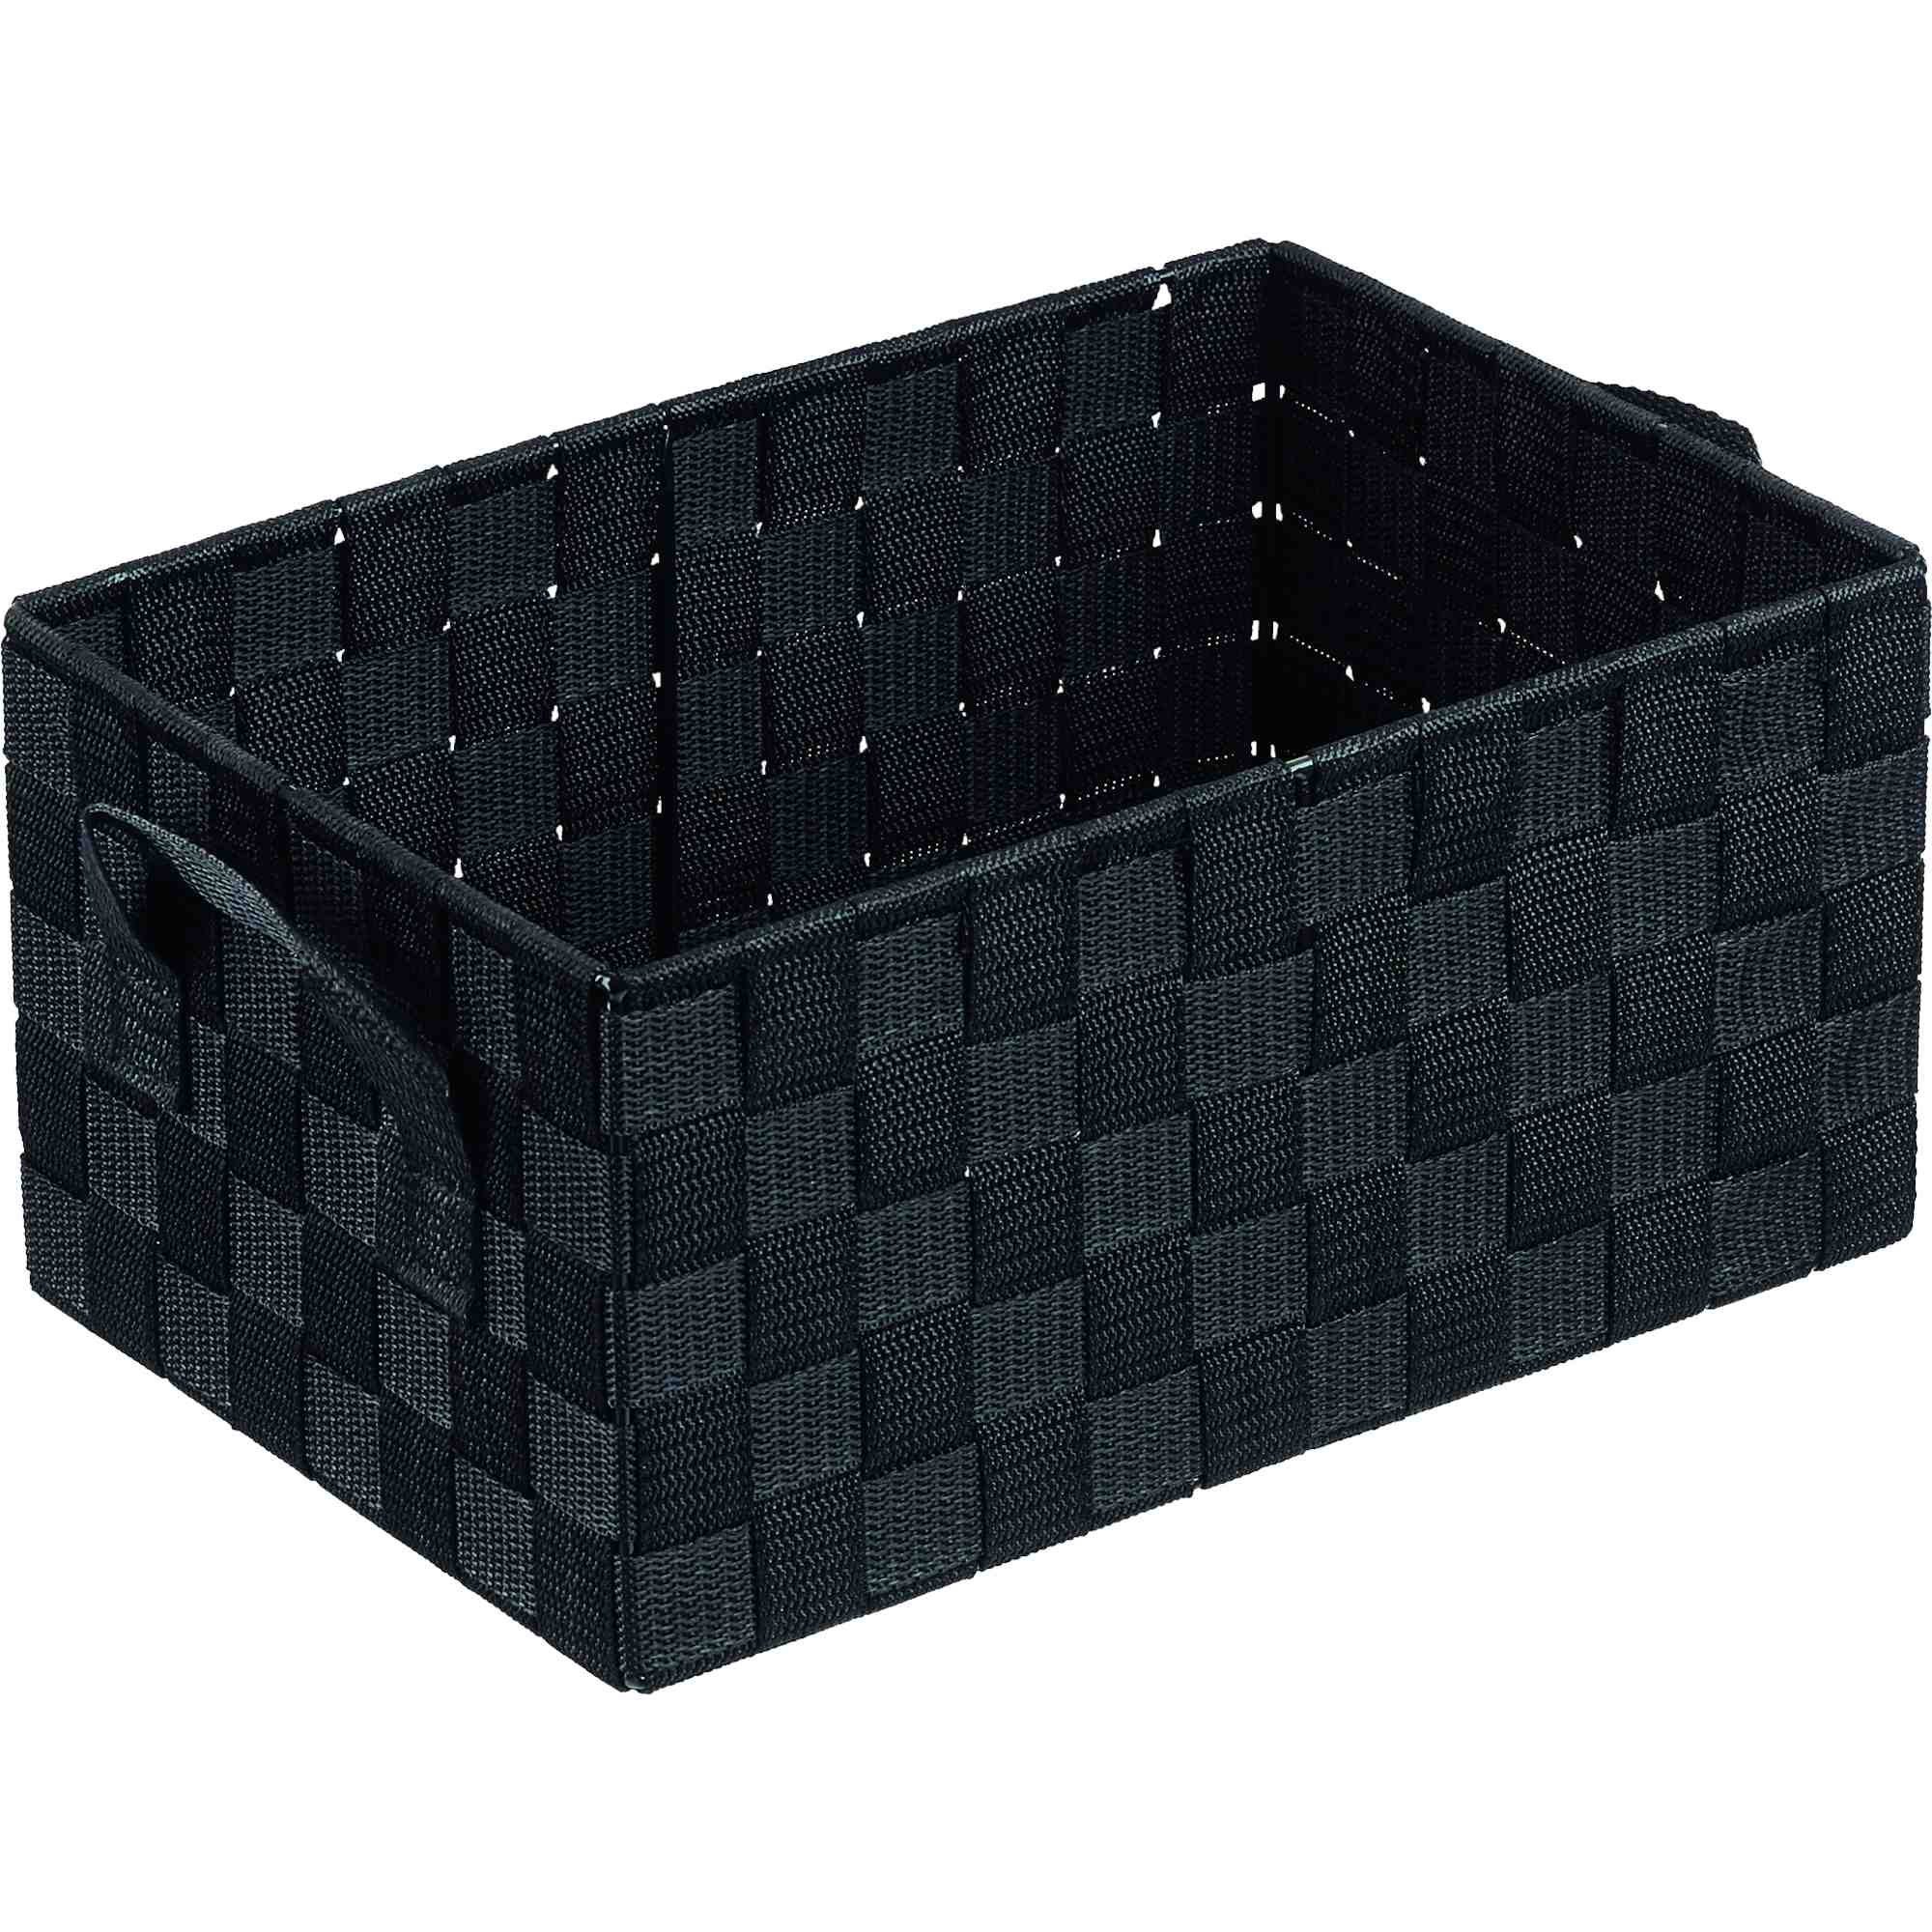 B&S Regalkorb Regalkorb Geflecht schwarz Ordnungsbox rechteckig 22 x 32 cm